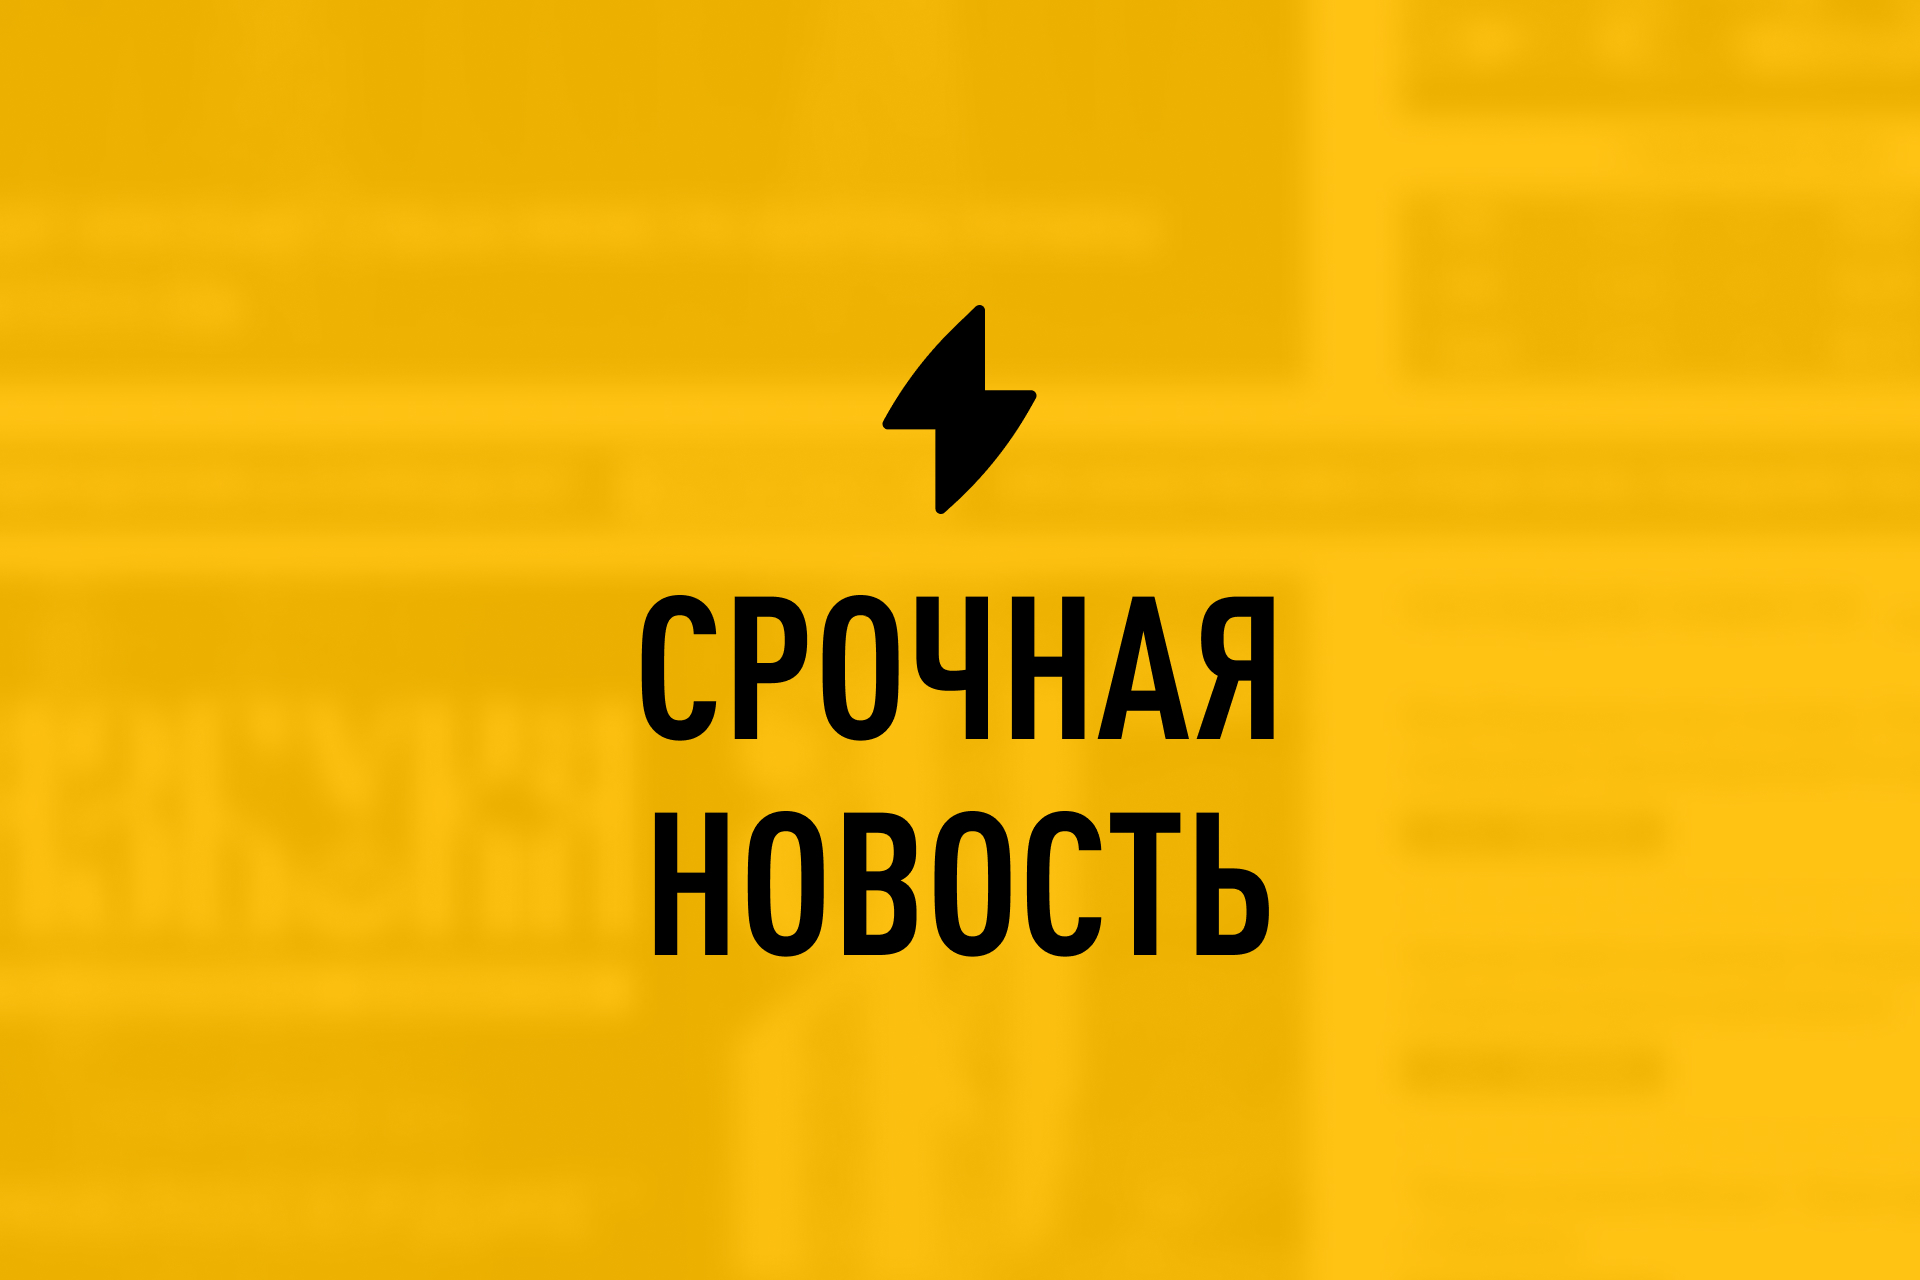 Над тремя городами России закрыли небо: В Подмосковье введён сигнал 